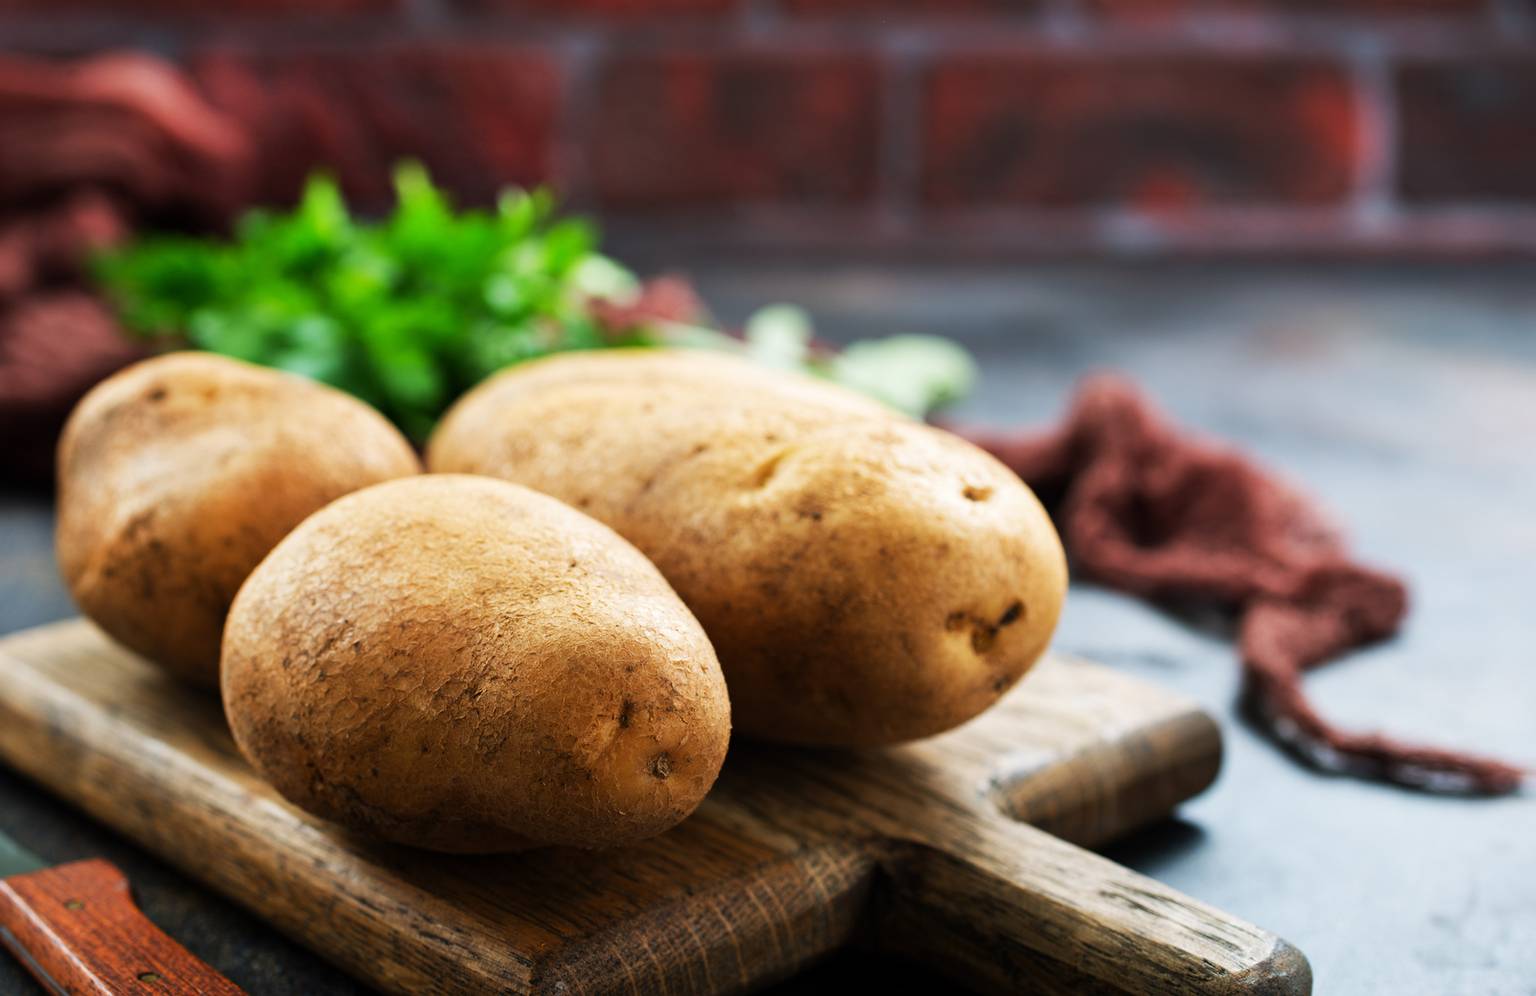 How to grow potatoes using AI